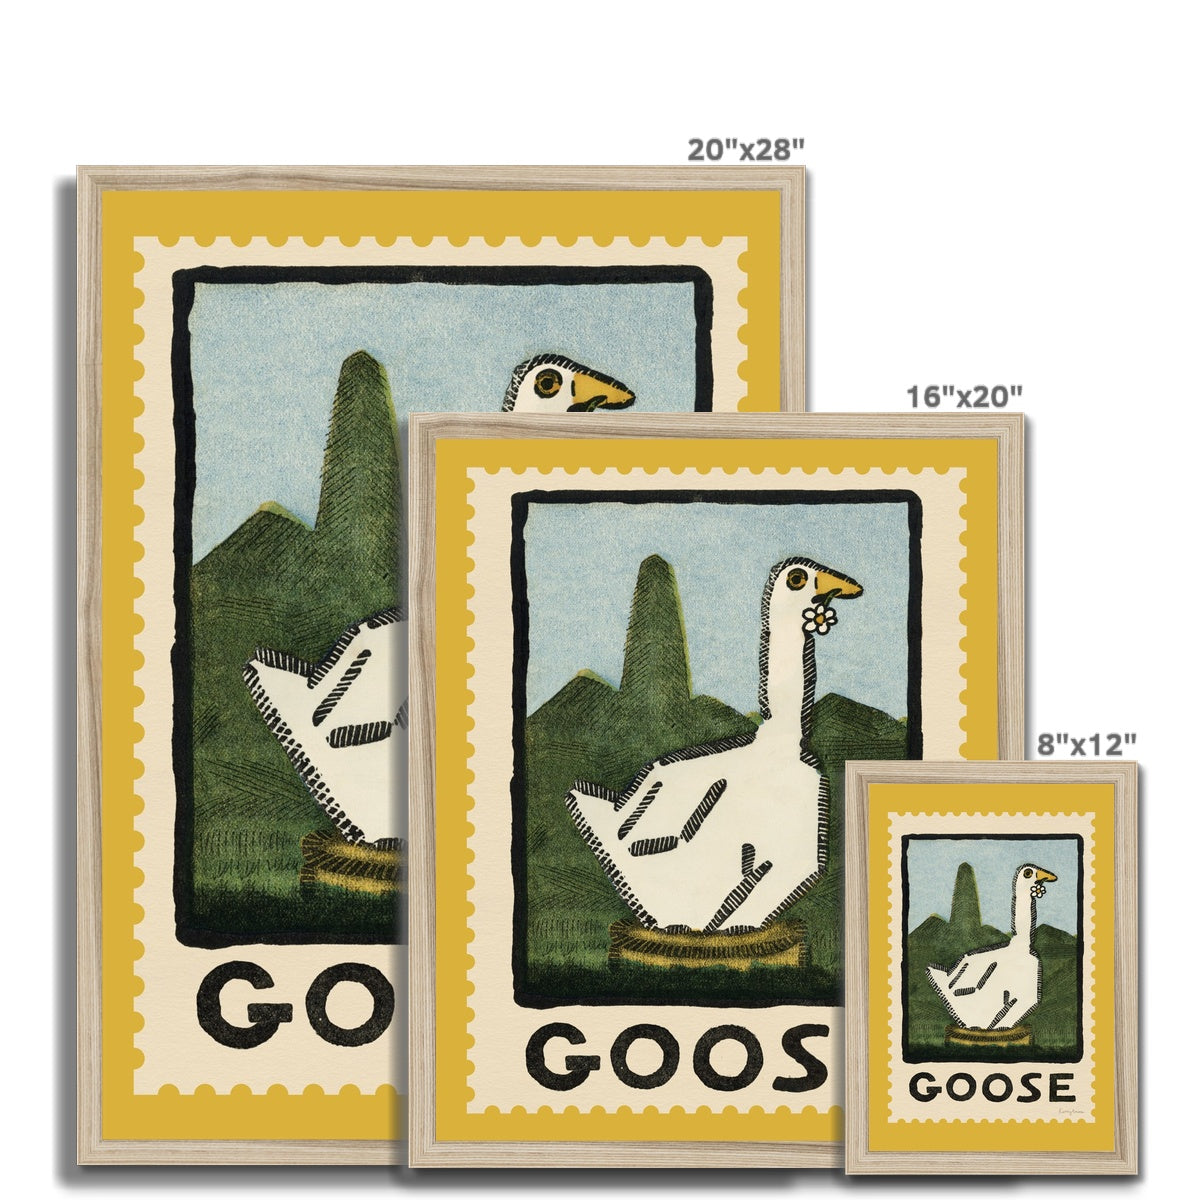 Goose Vintage Postage Stamp Framed Fine Art Print